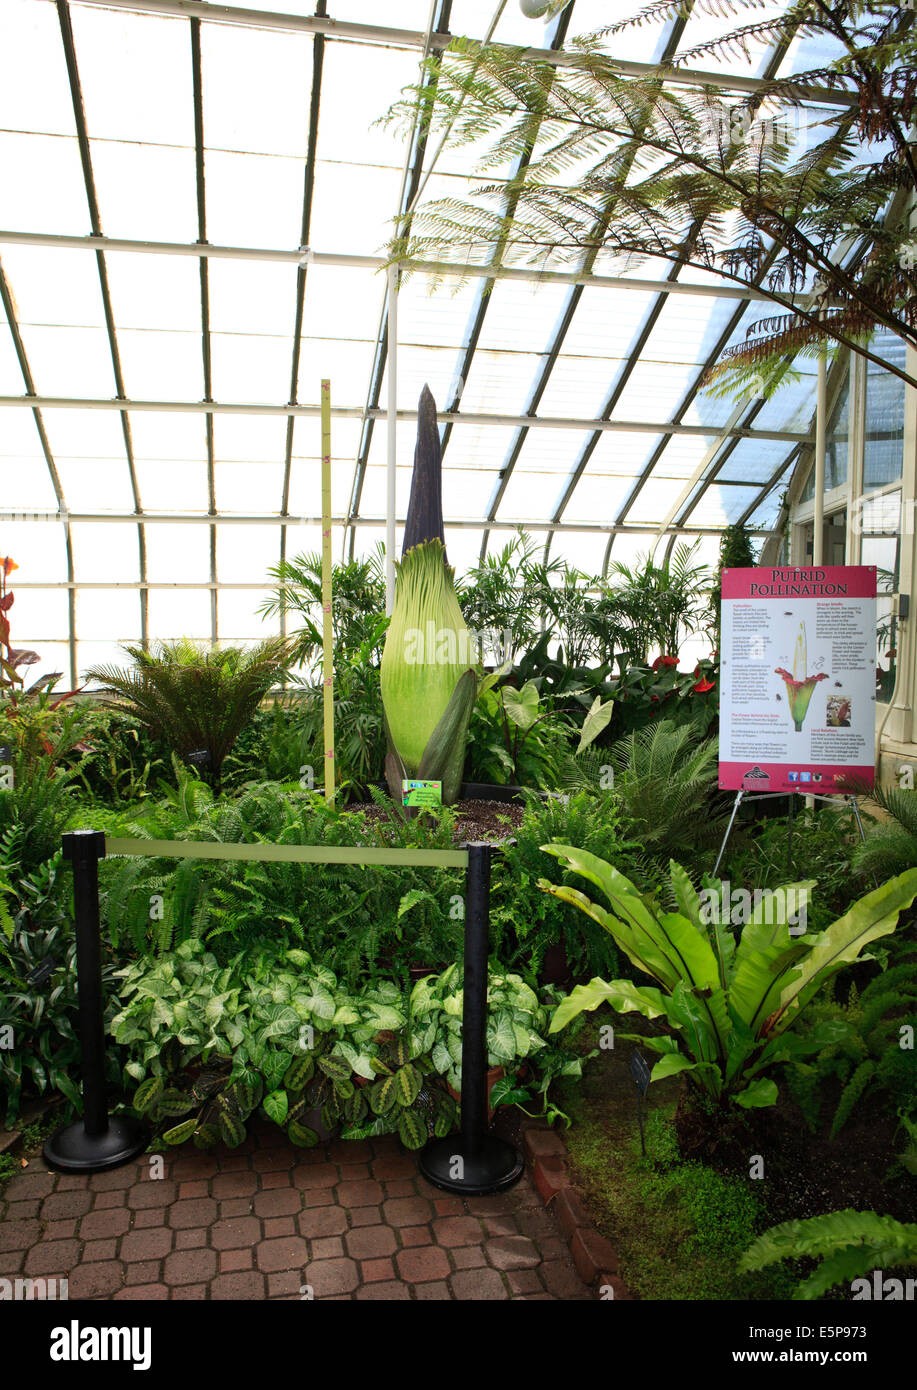 Bourgeon non ouvert de la Fleur Cadavre ou titan arum (Amorphophallus titanum), au Jardin botanique de Buffalo, avant la floraison. Banque D'Images